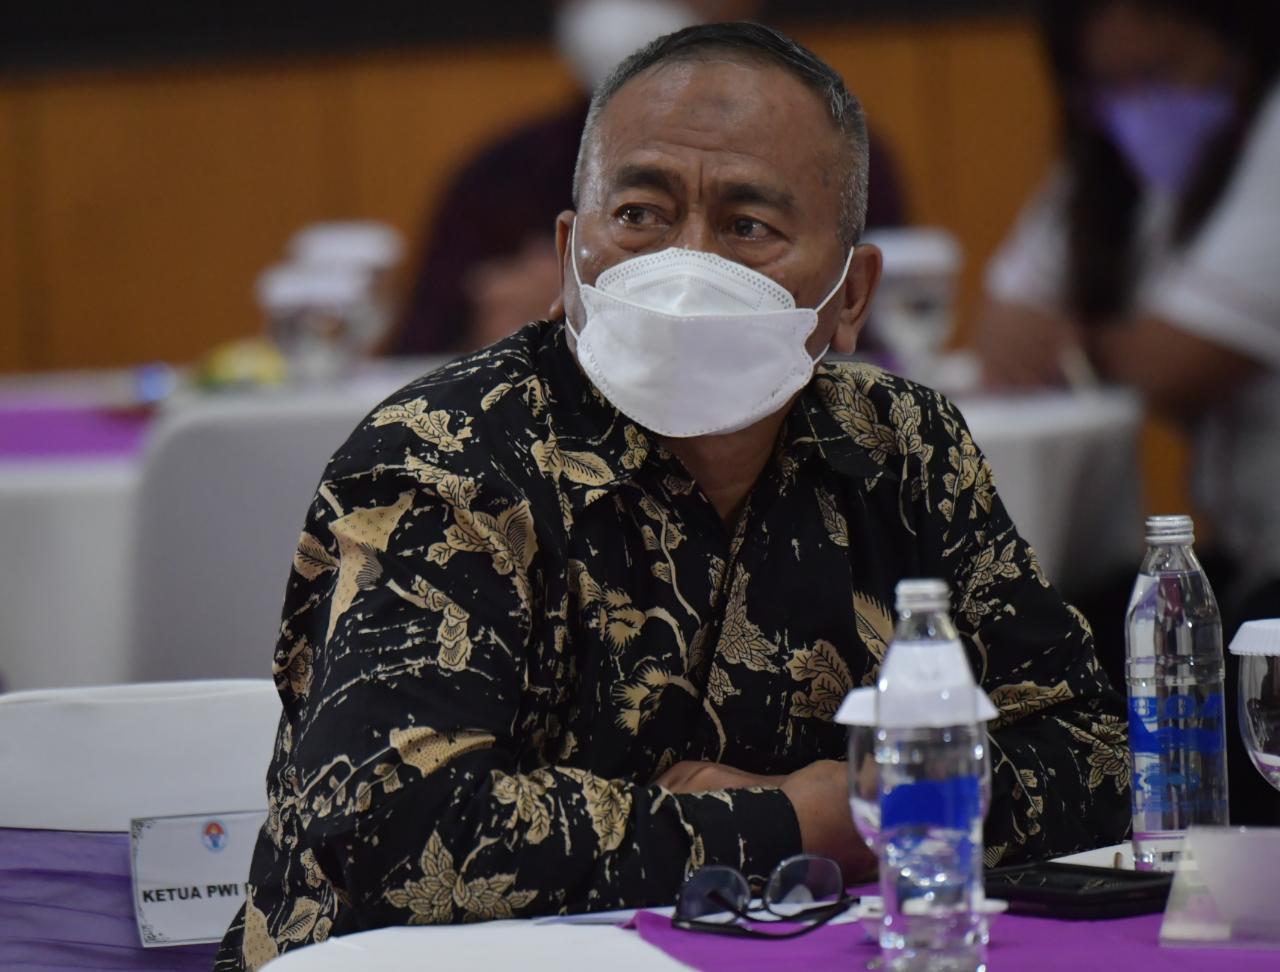 Ketua PWI Pusat Sebut DBON Bisa Angkat Martabat Bangsa Indonesia dengan Olahraga